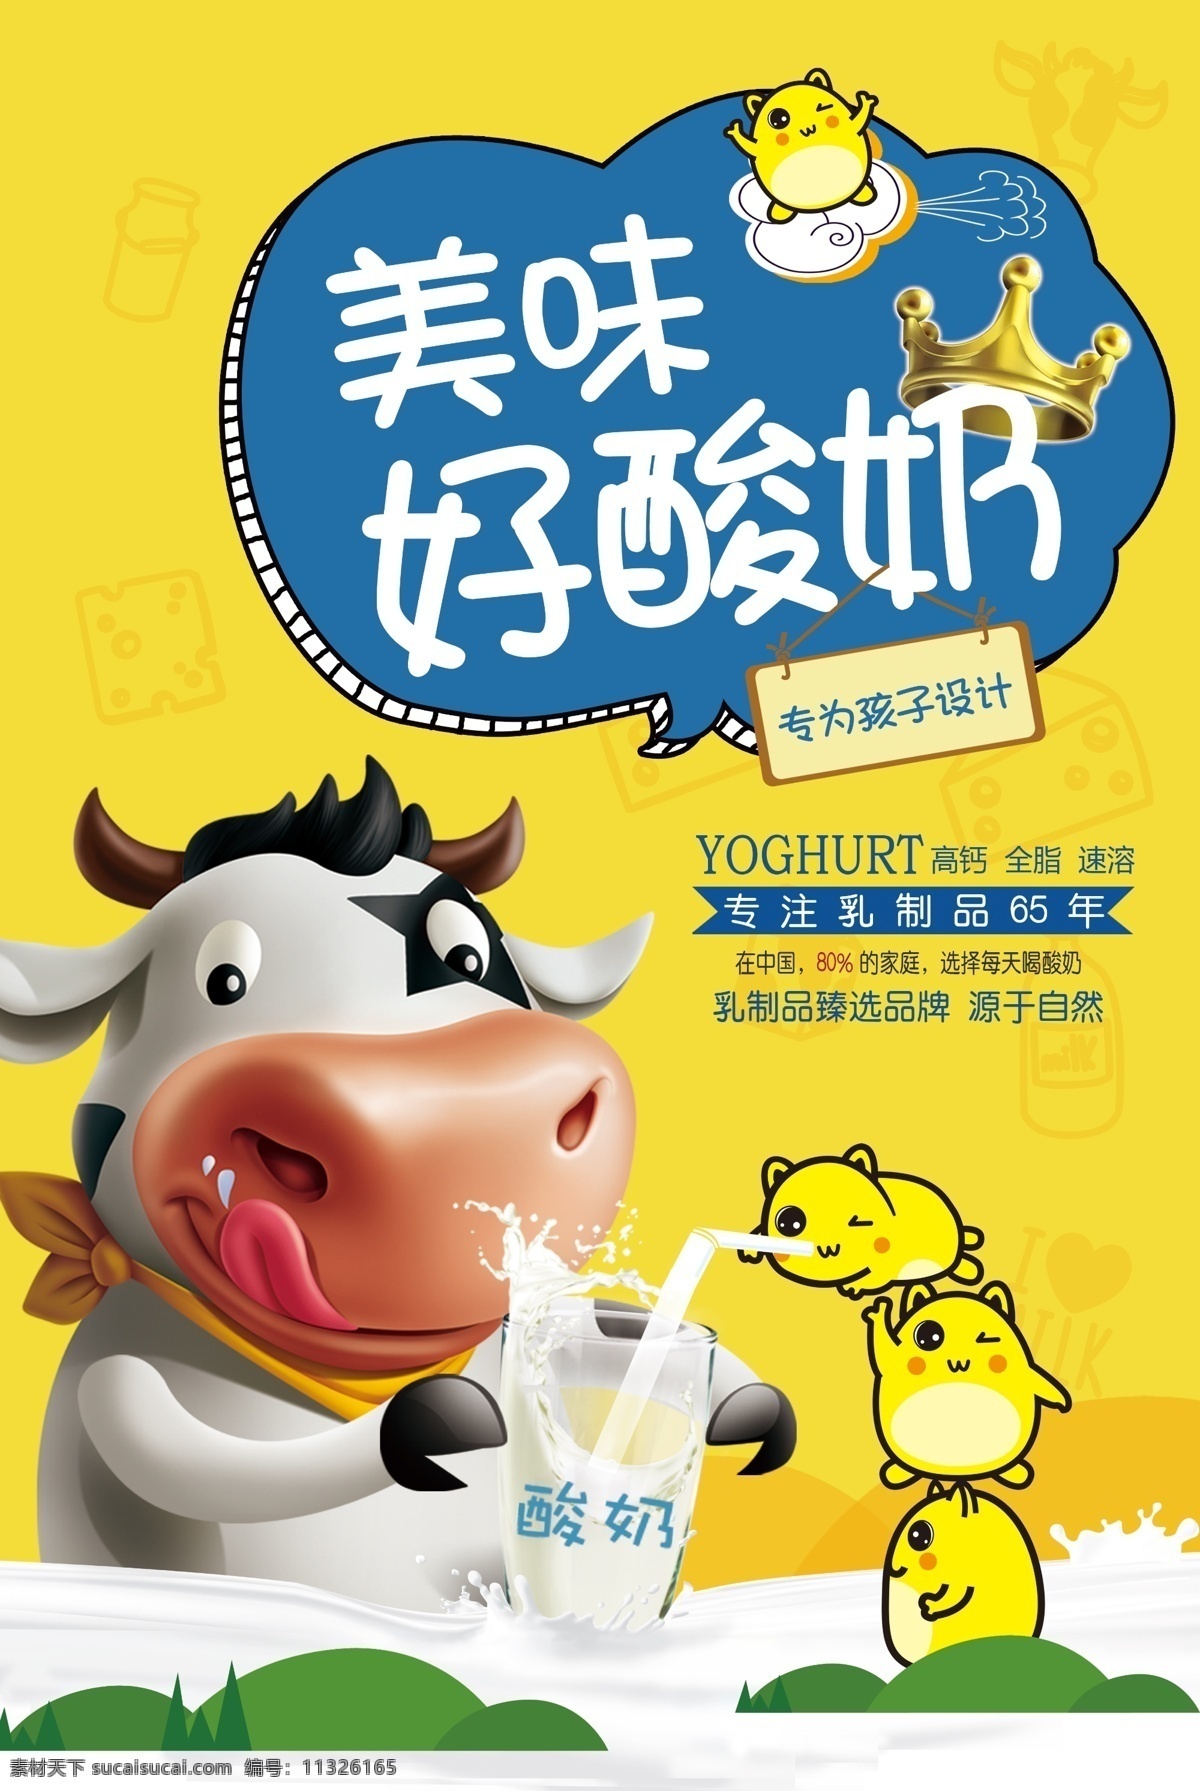 酸奶海报 酸牛奶 卡通蒙牛 美味酸牛奶 酸奶 海报